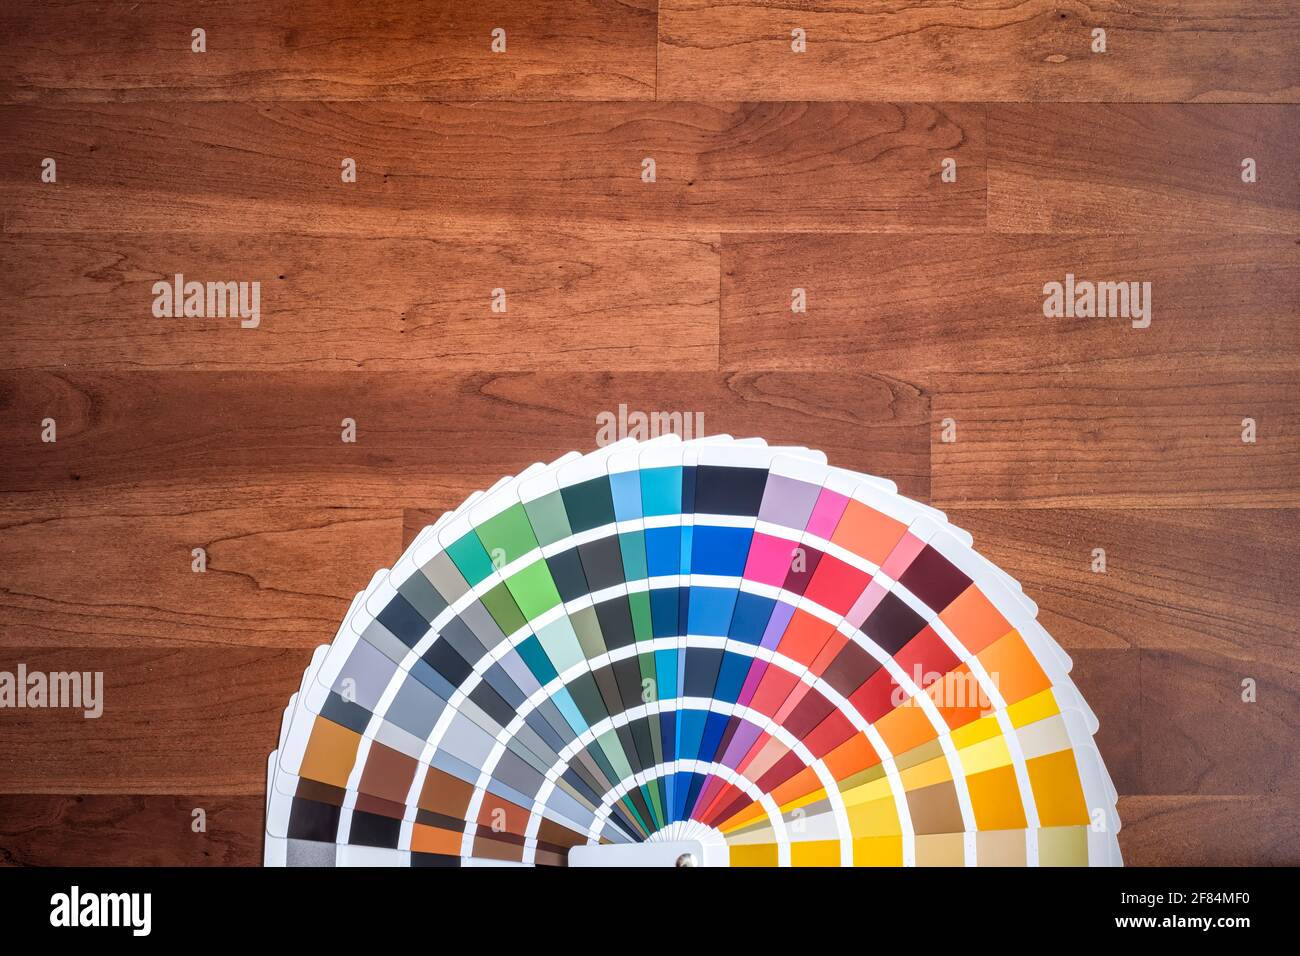 Ein offenes Farbmuster mit all den verschiedenen Farben, die auf einer Holzoberfläche ausgeklappt sind, kirschfarbene Holzstruktur, horizontal Stockfoto